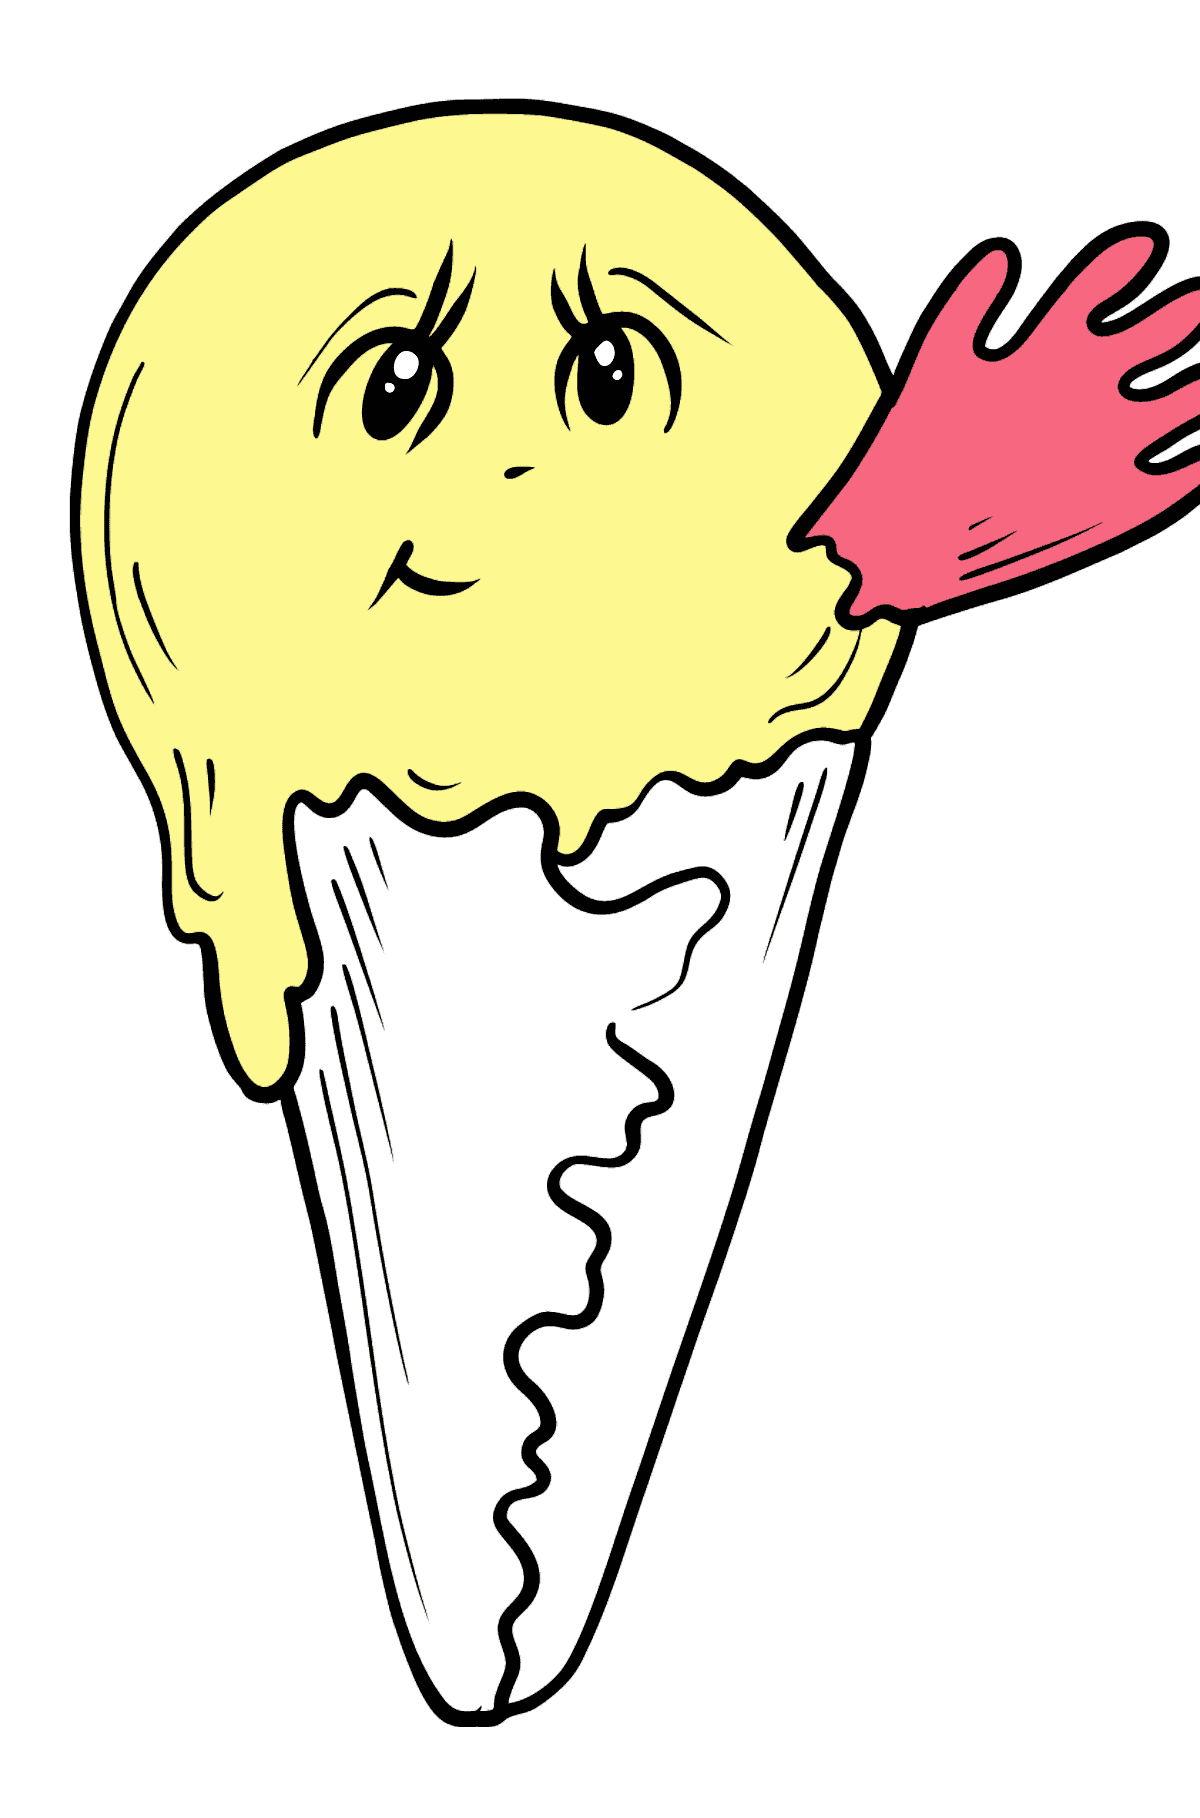 Desenho para colorir de sorvete de banana com olhos - Imagens para Colorir para Crianças